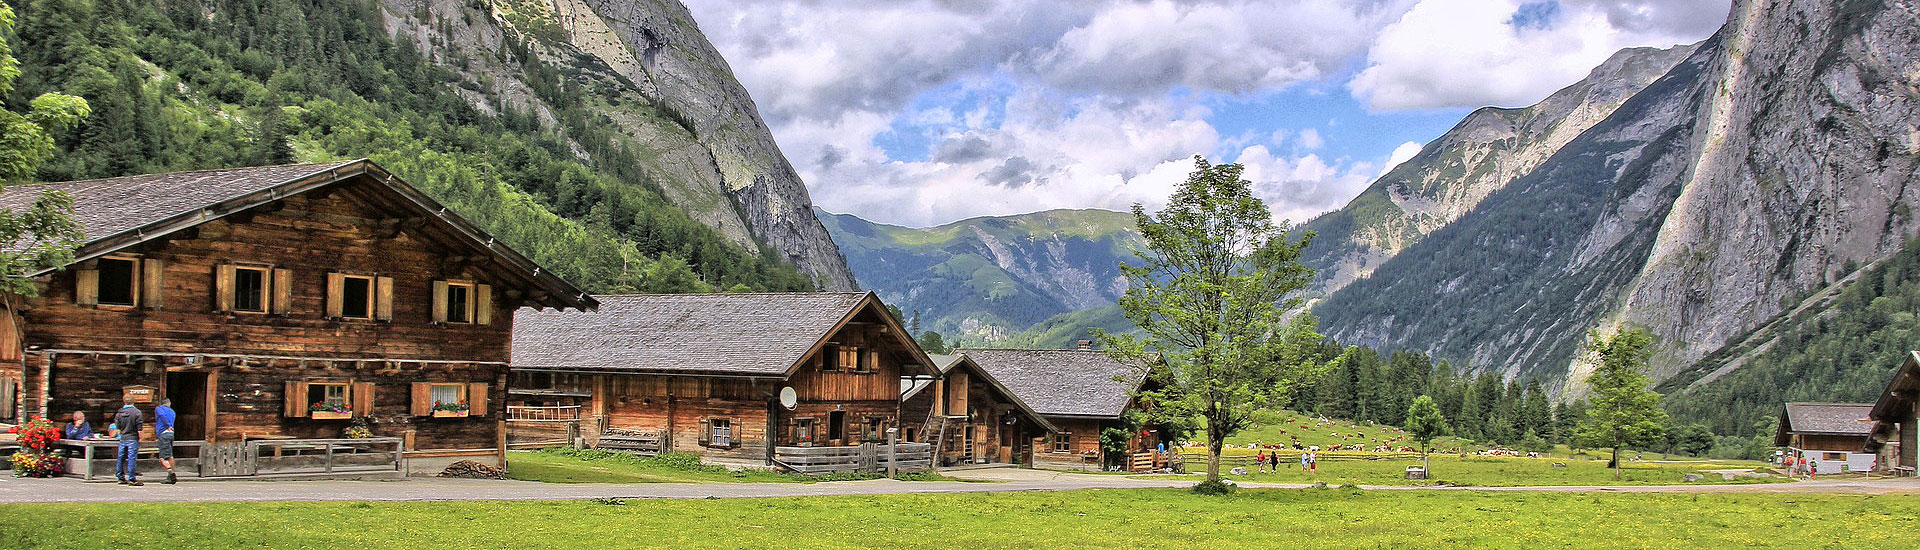 Wanderparadies Karwendelregion 